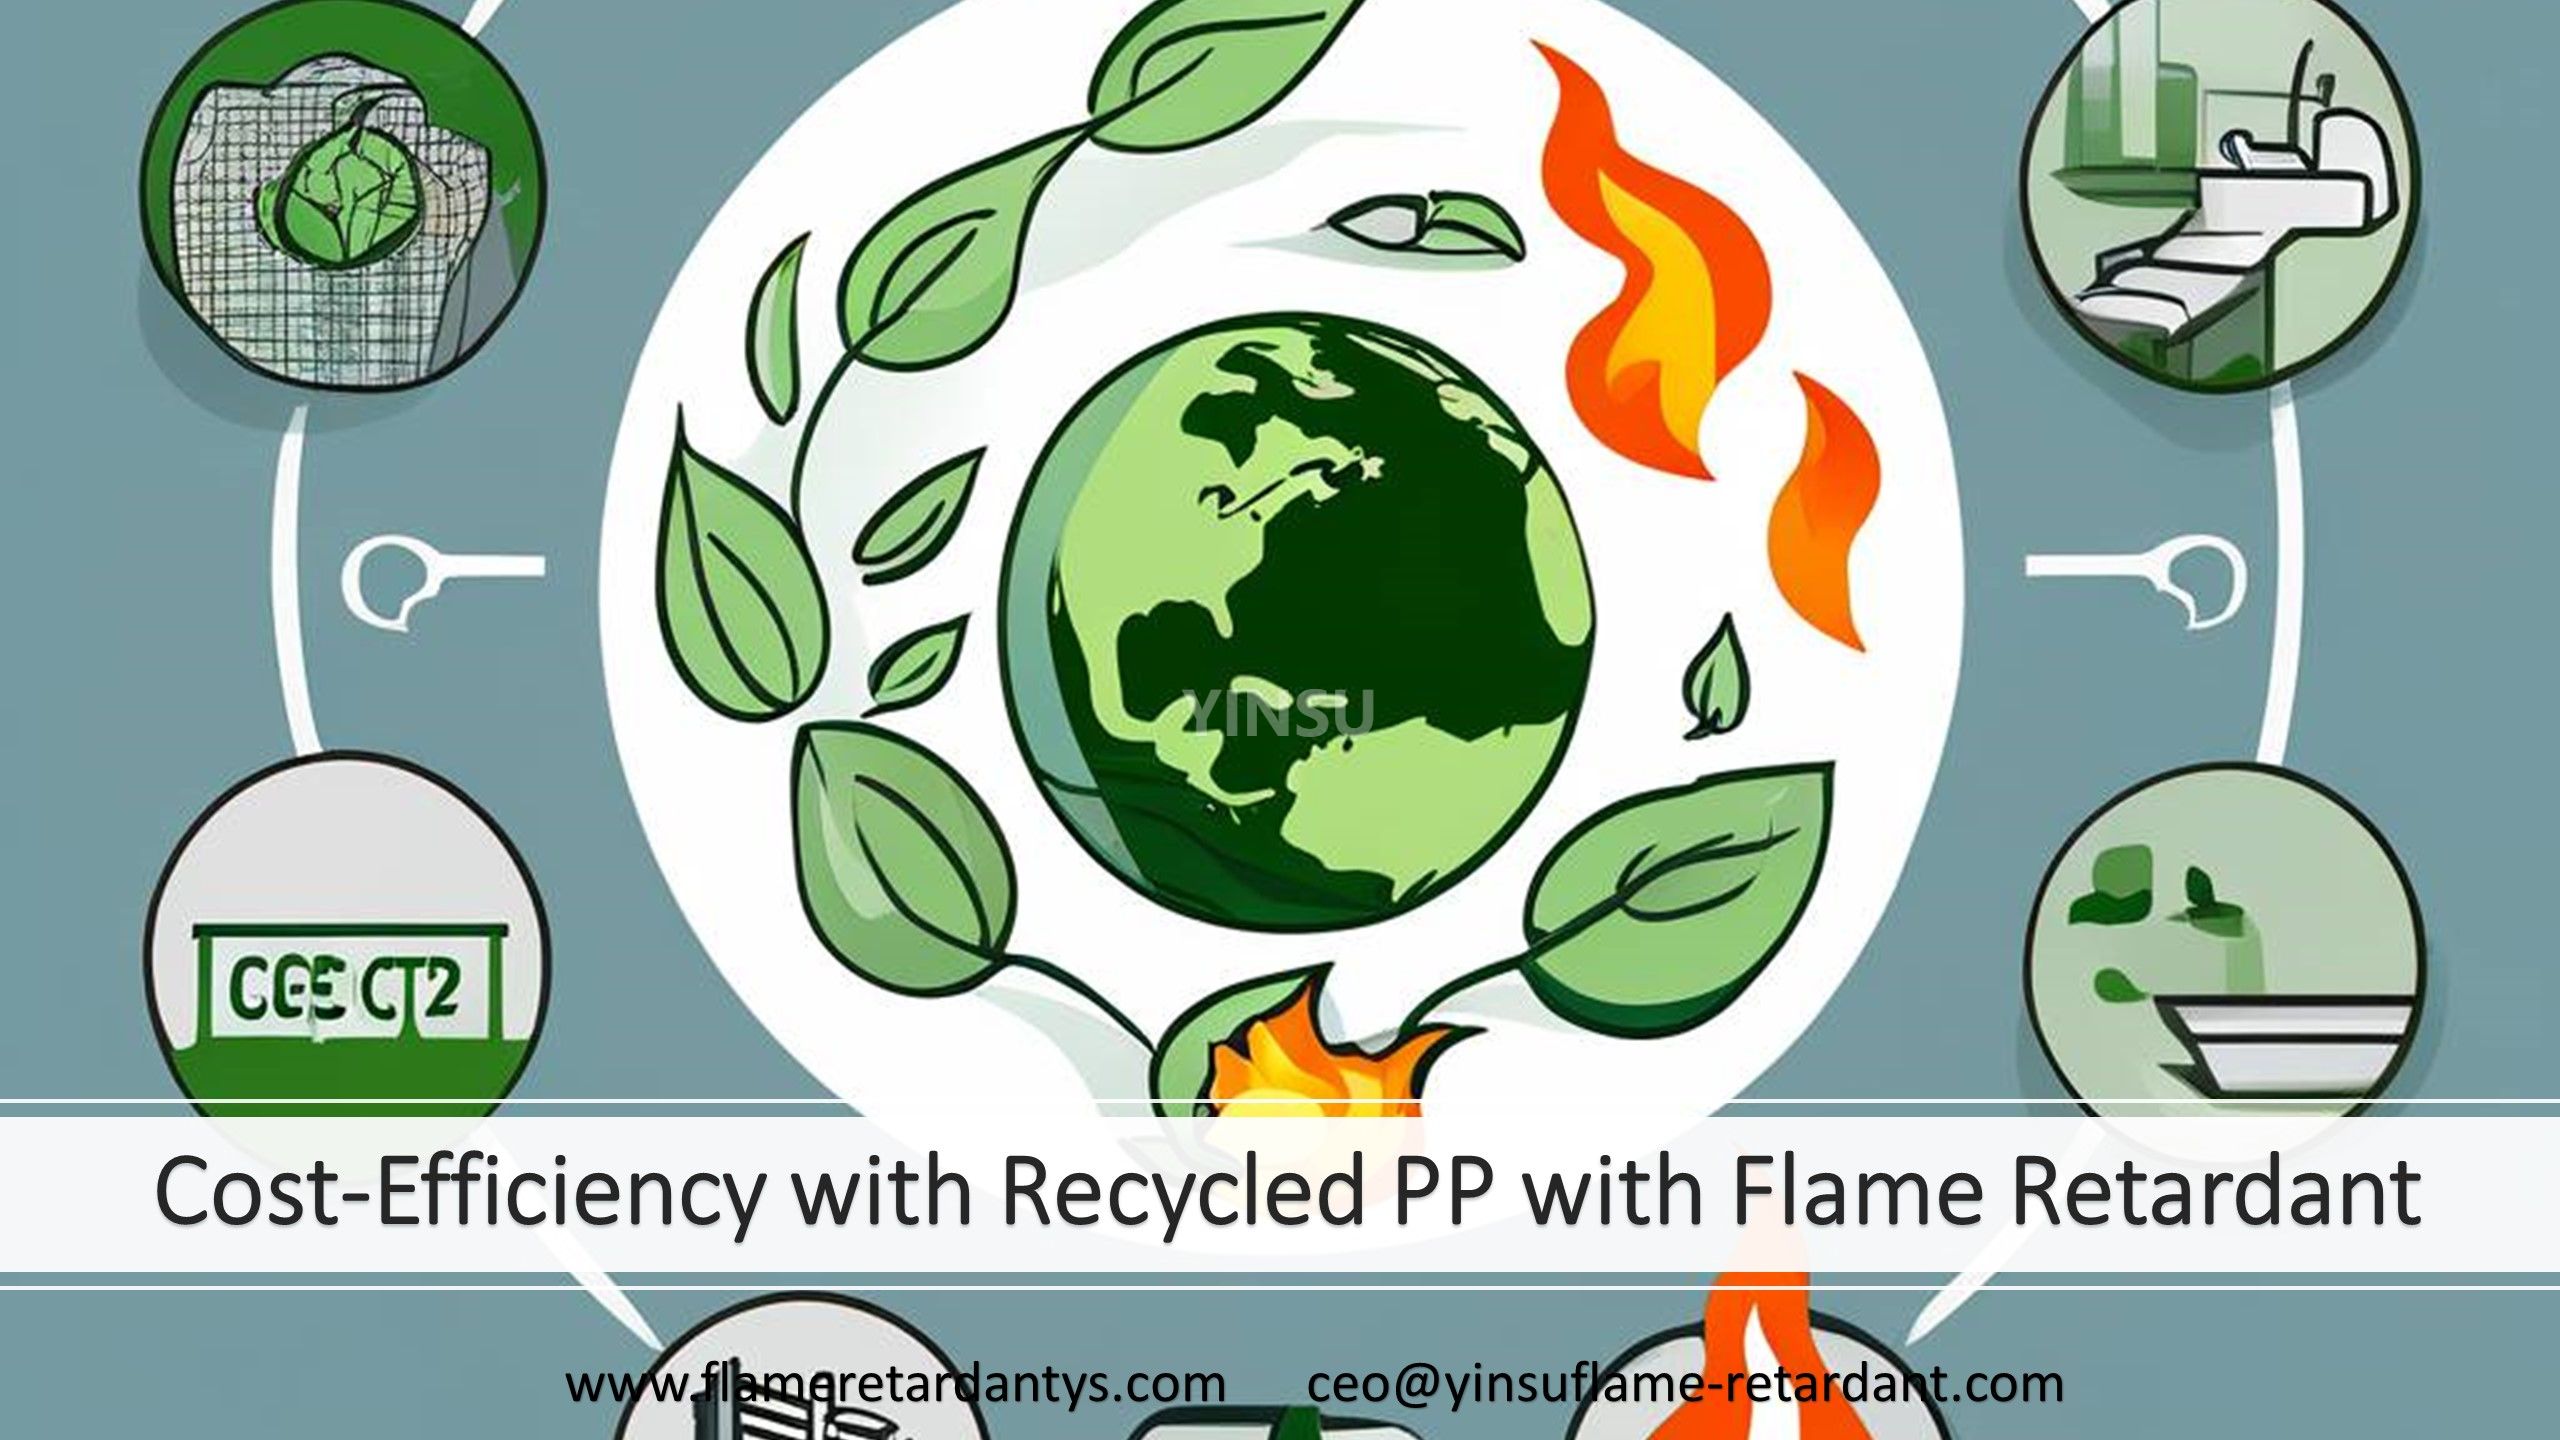 Rentabilité avec le PP recyclé avec retardateur de flamme